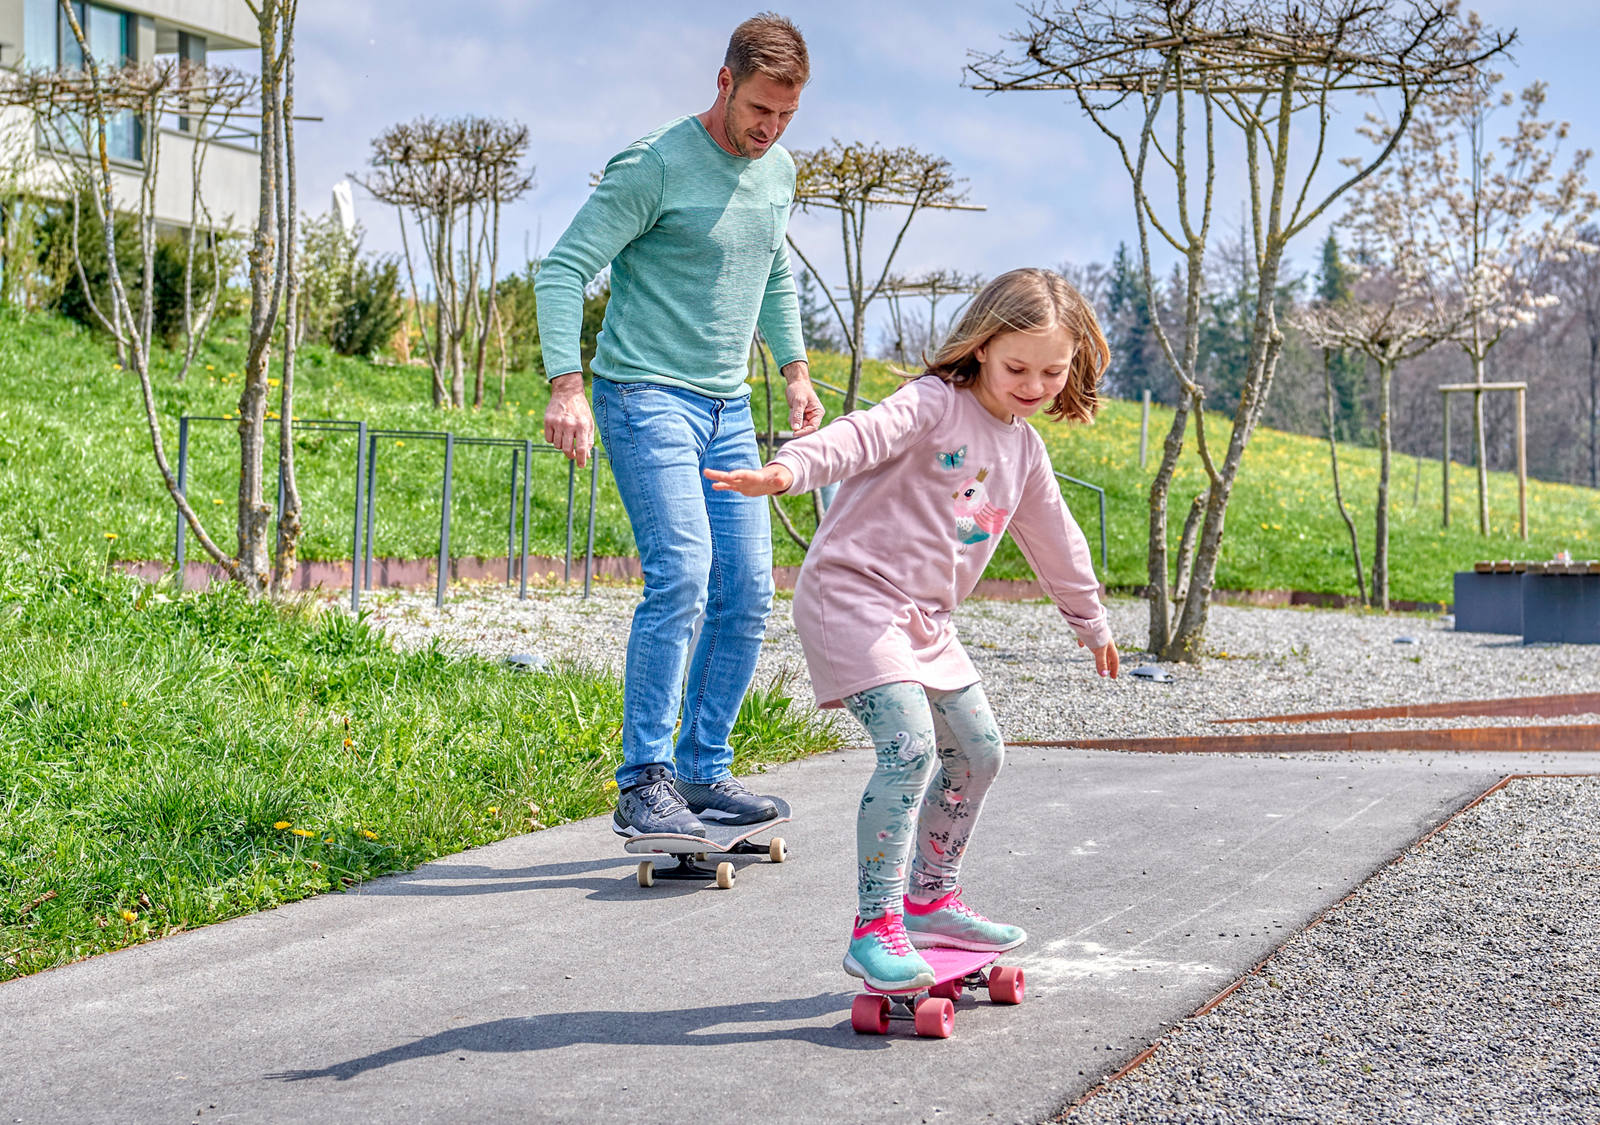 Vater und Tochter üben Skateboard fahren